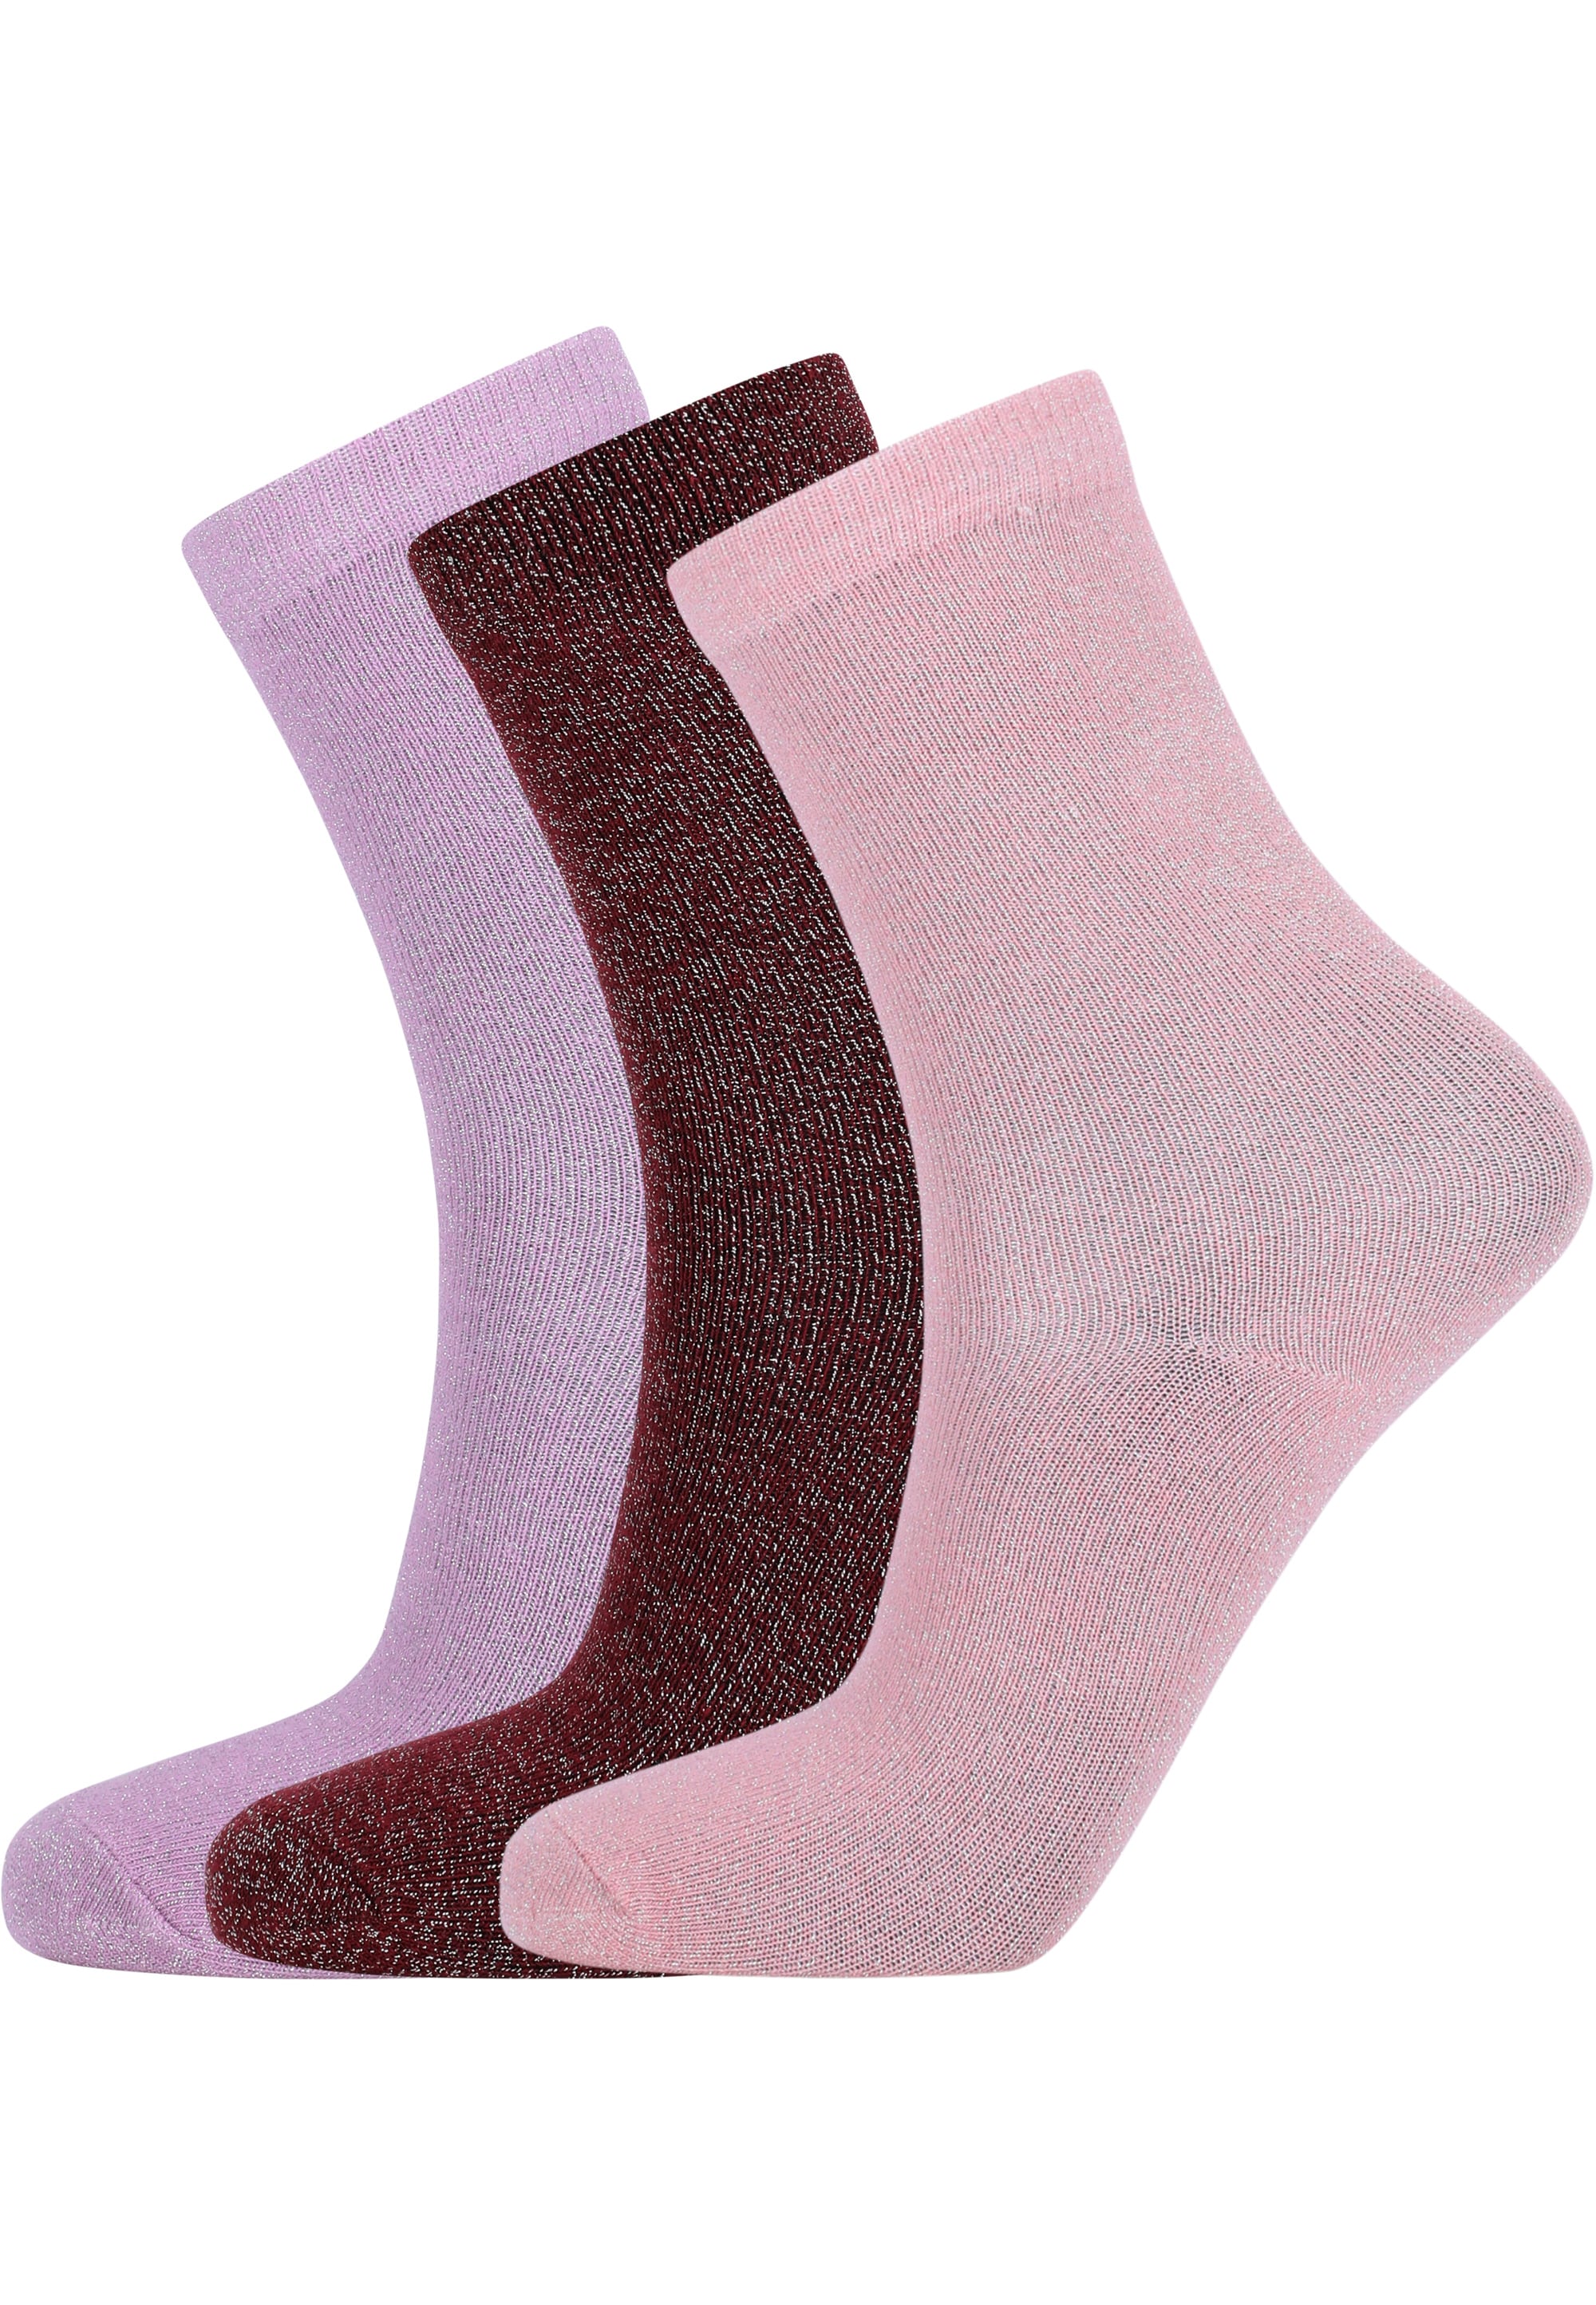 ZIGZAG Socken »Bhoebe«, im praktischen 3er-Pack